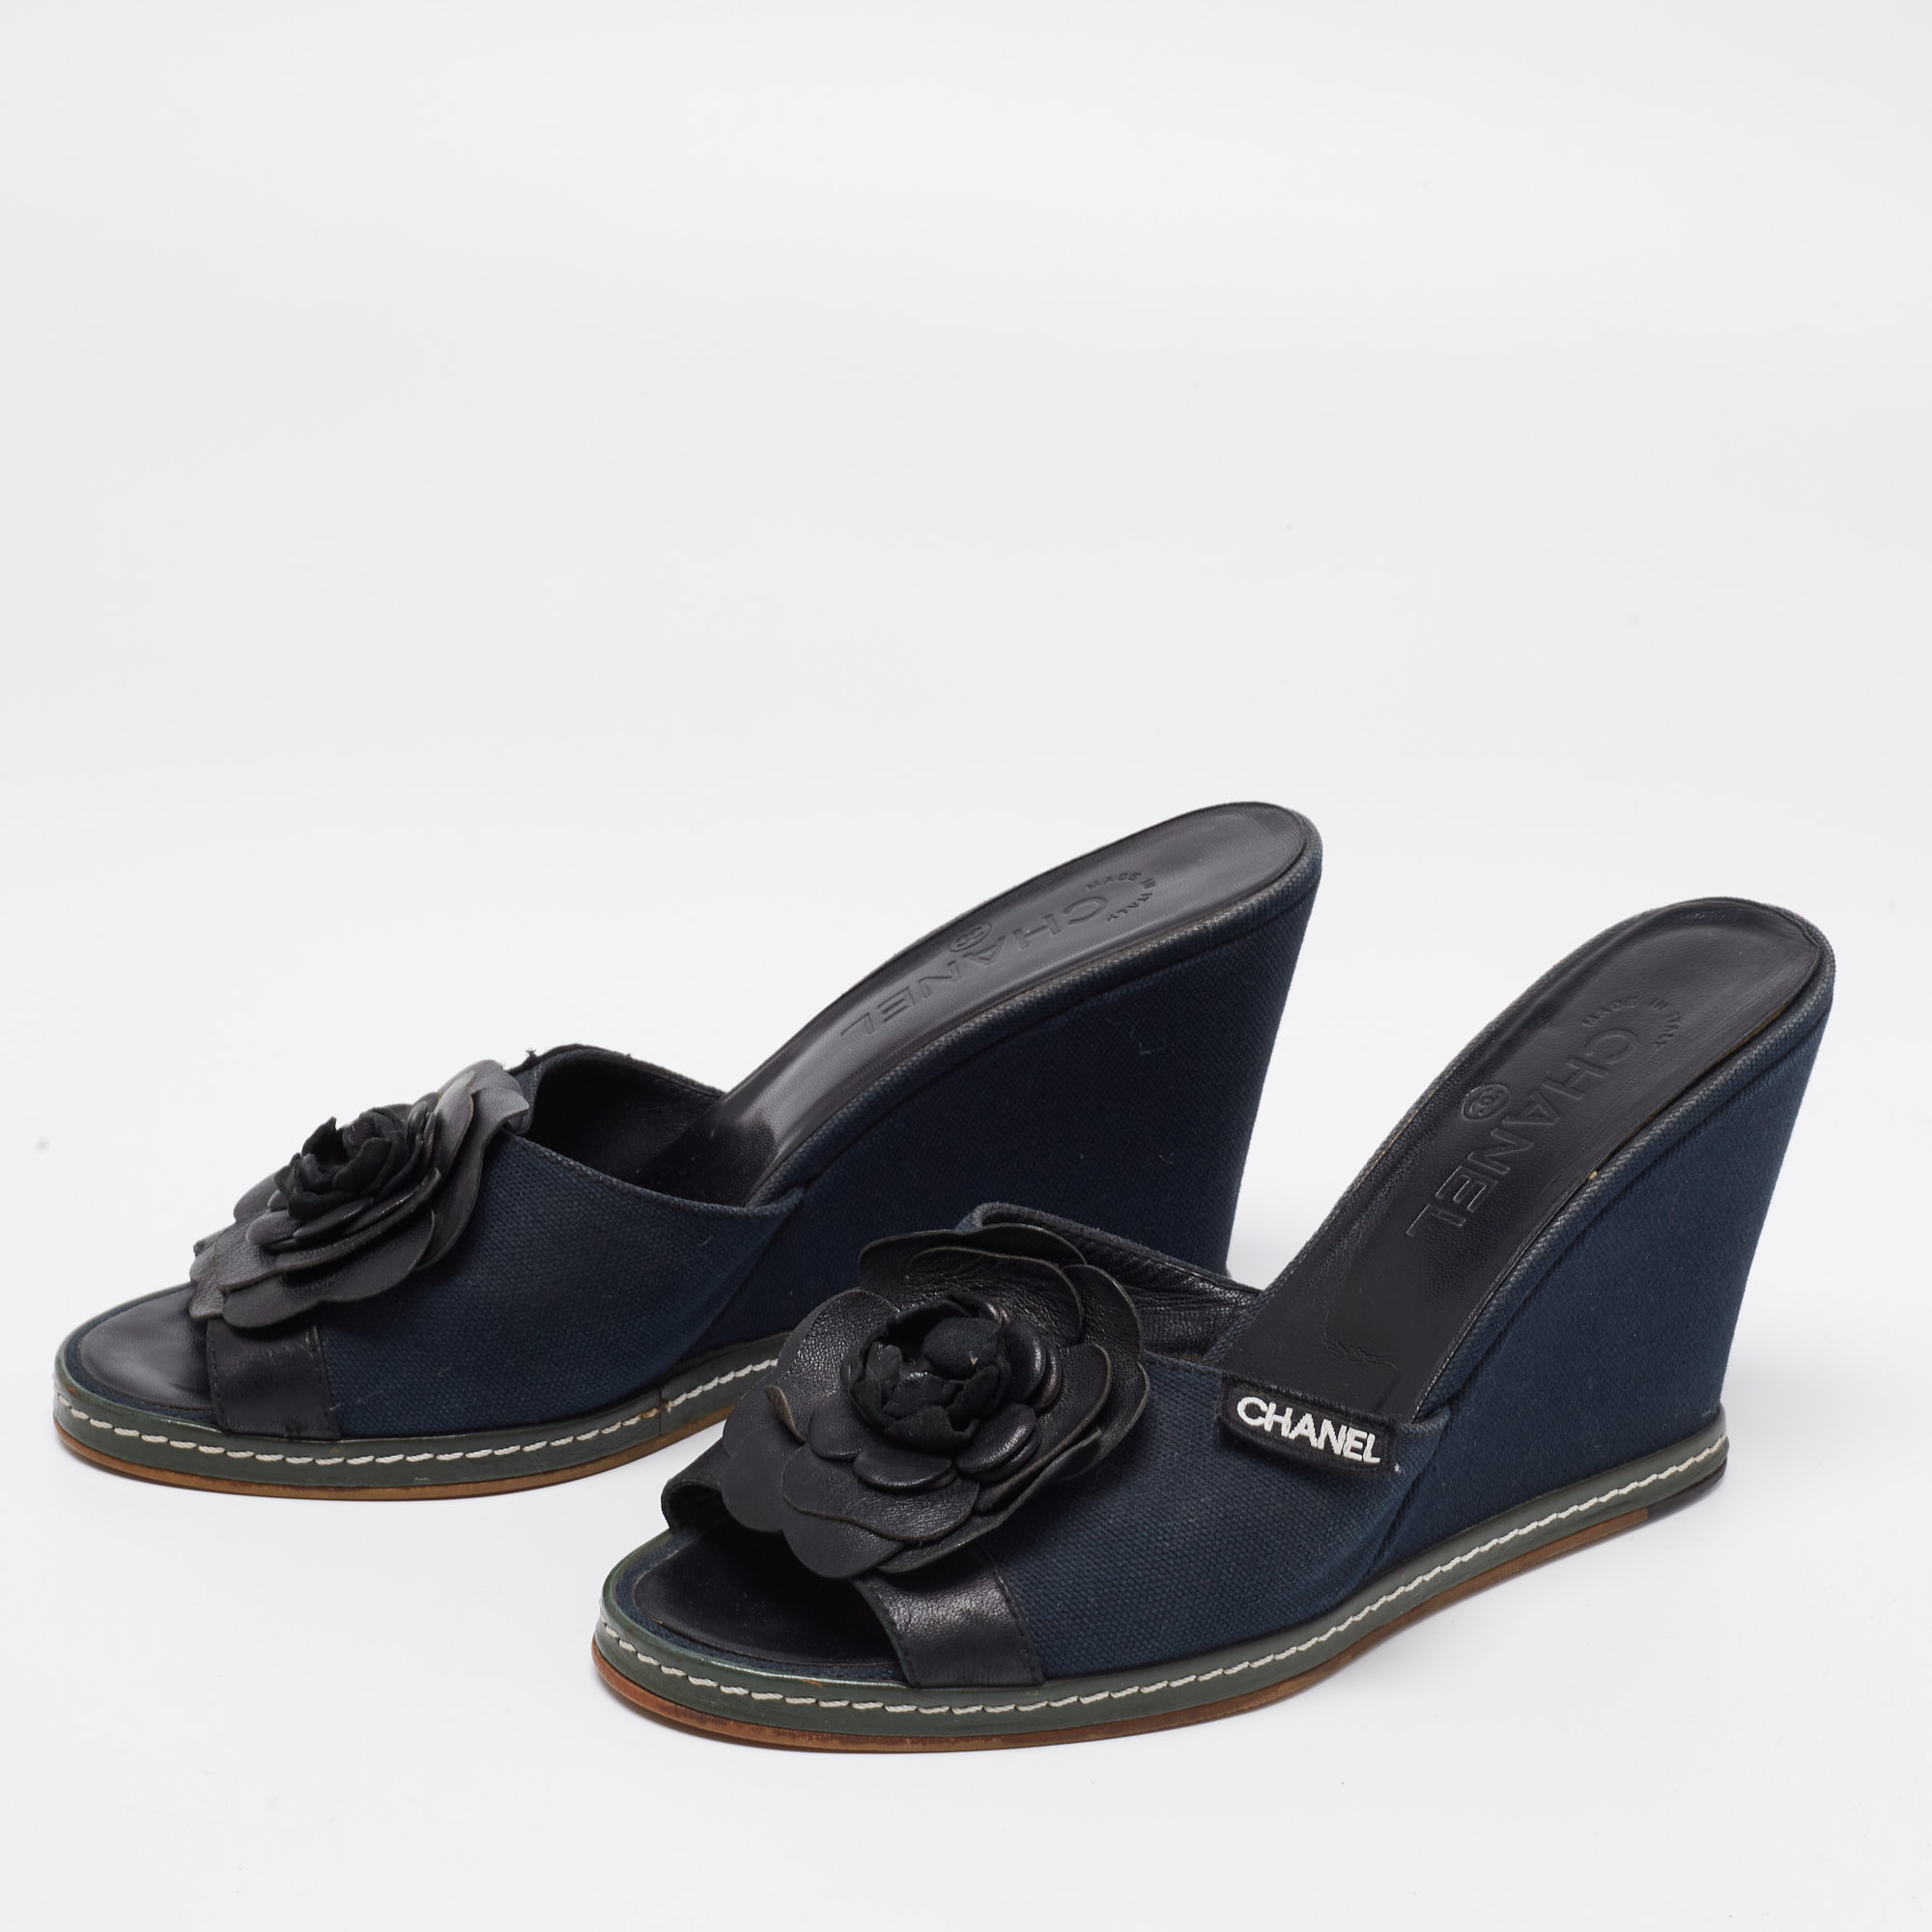 

Chanel Blue/Black Camellia Slide Wedge Sandals Size